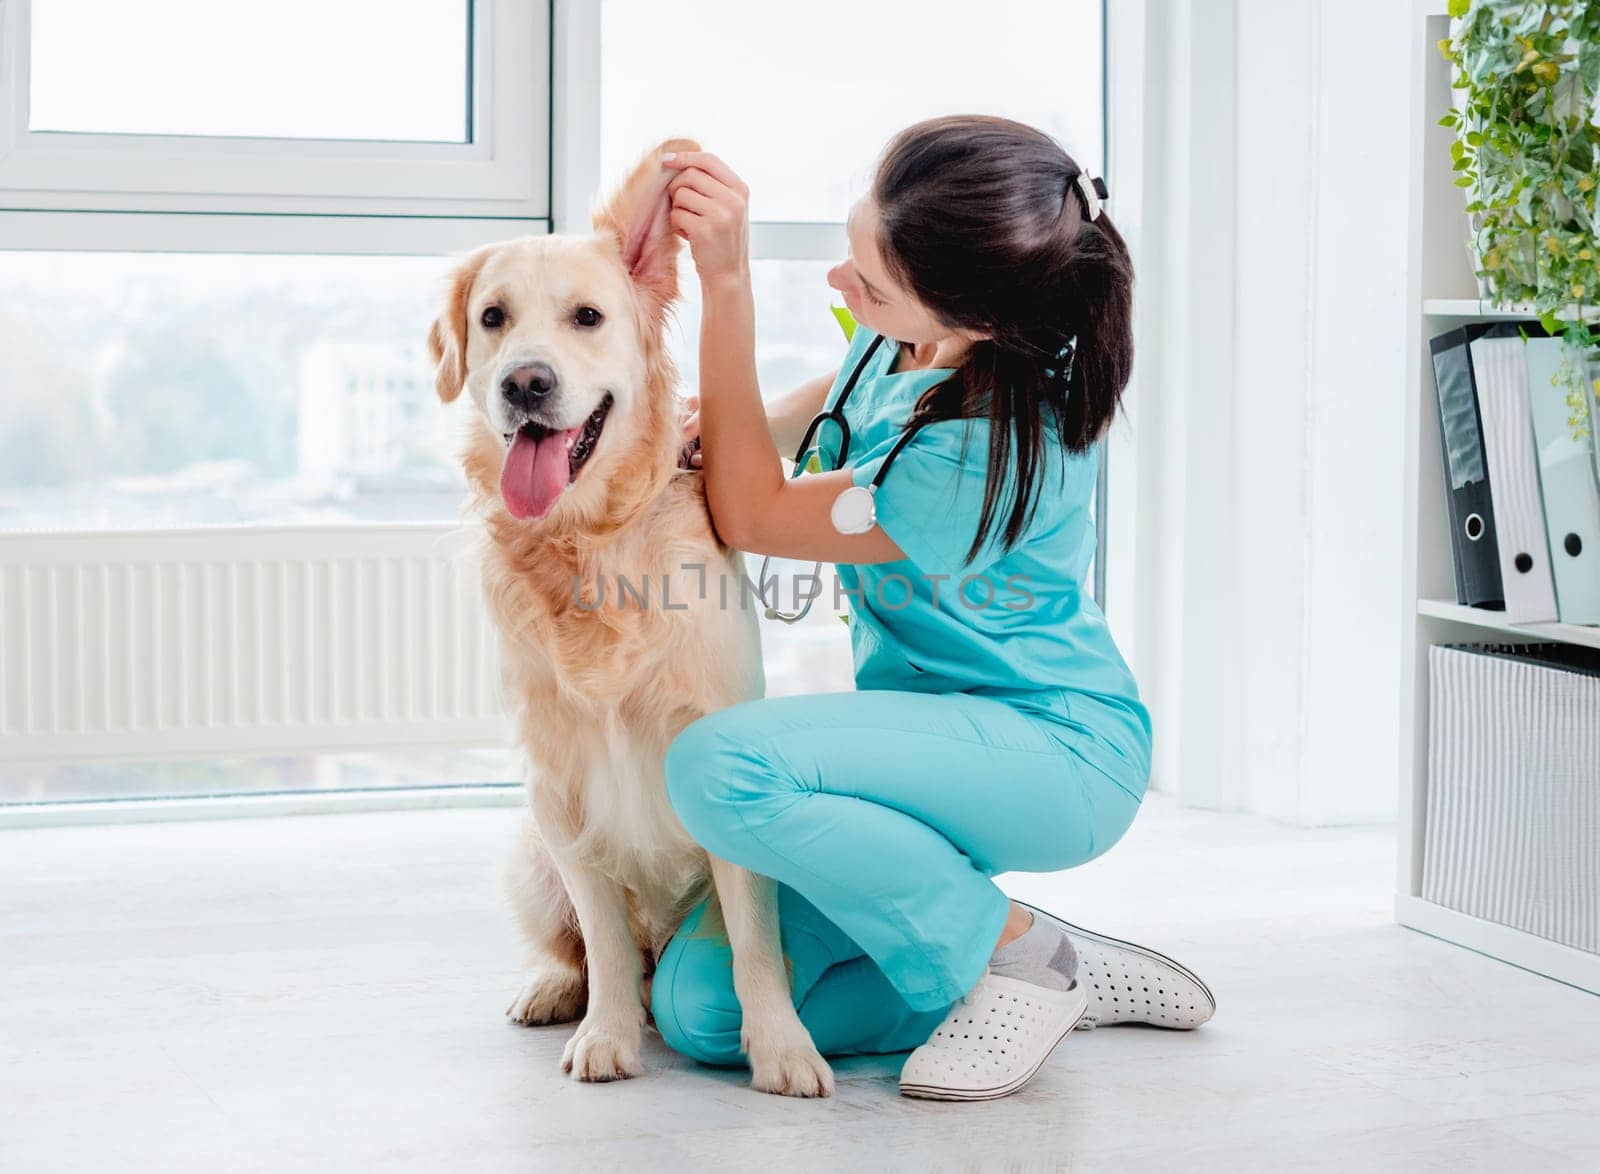 Examination of golden retriever dog by vet by tan4ikk1